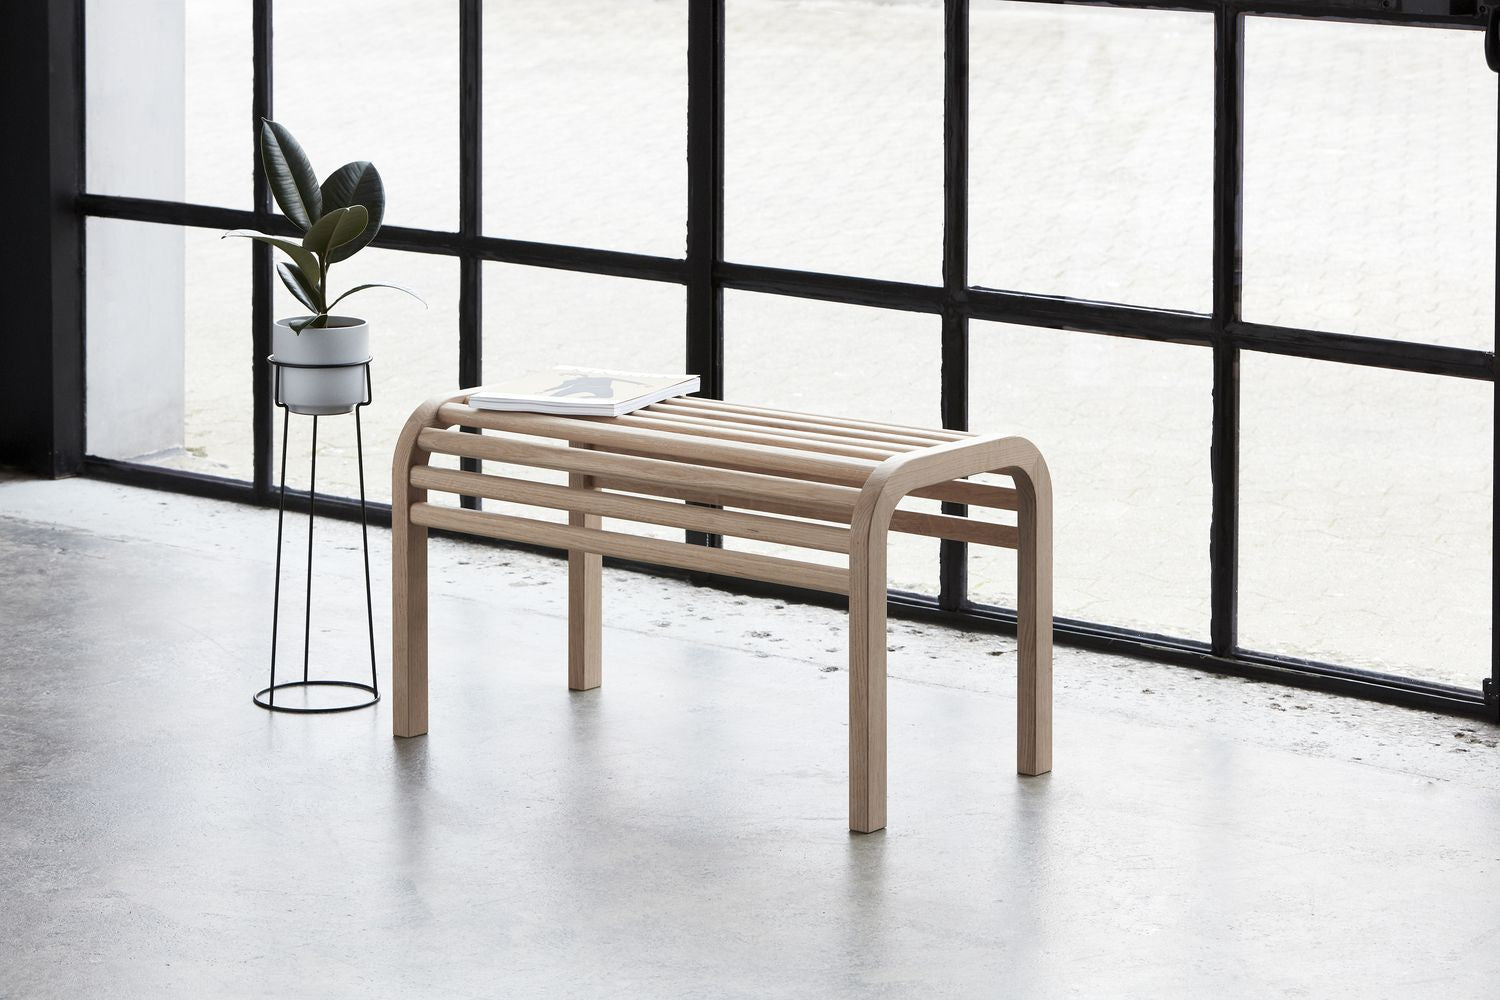 Andersen Furniture a Plant Flowerpot Hxø 12x13,3 cm, grigio